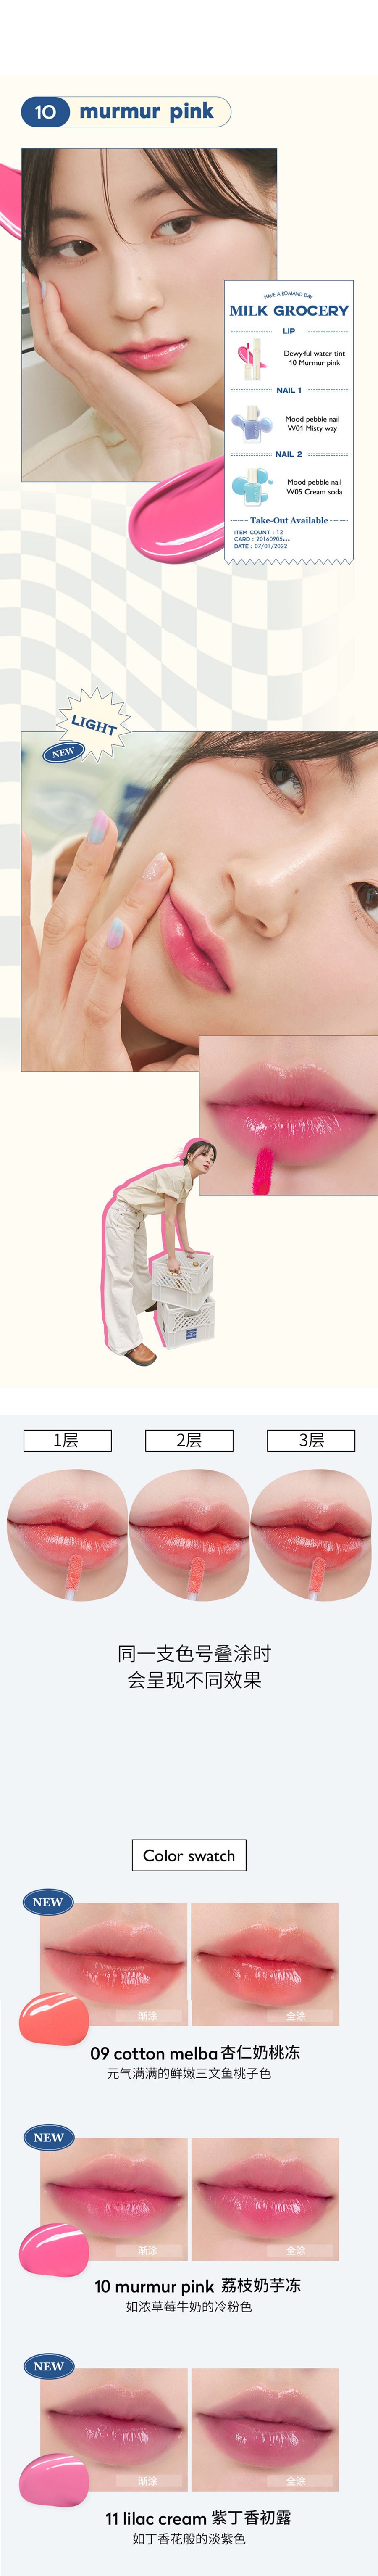 ROM&ND 【新品上市】牛奶杂货店系列 水感唇釉 #10 荔枝奶芋冻  下单送唇刷